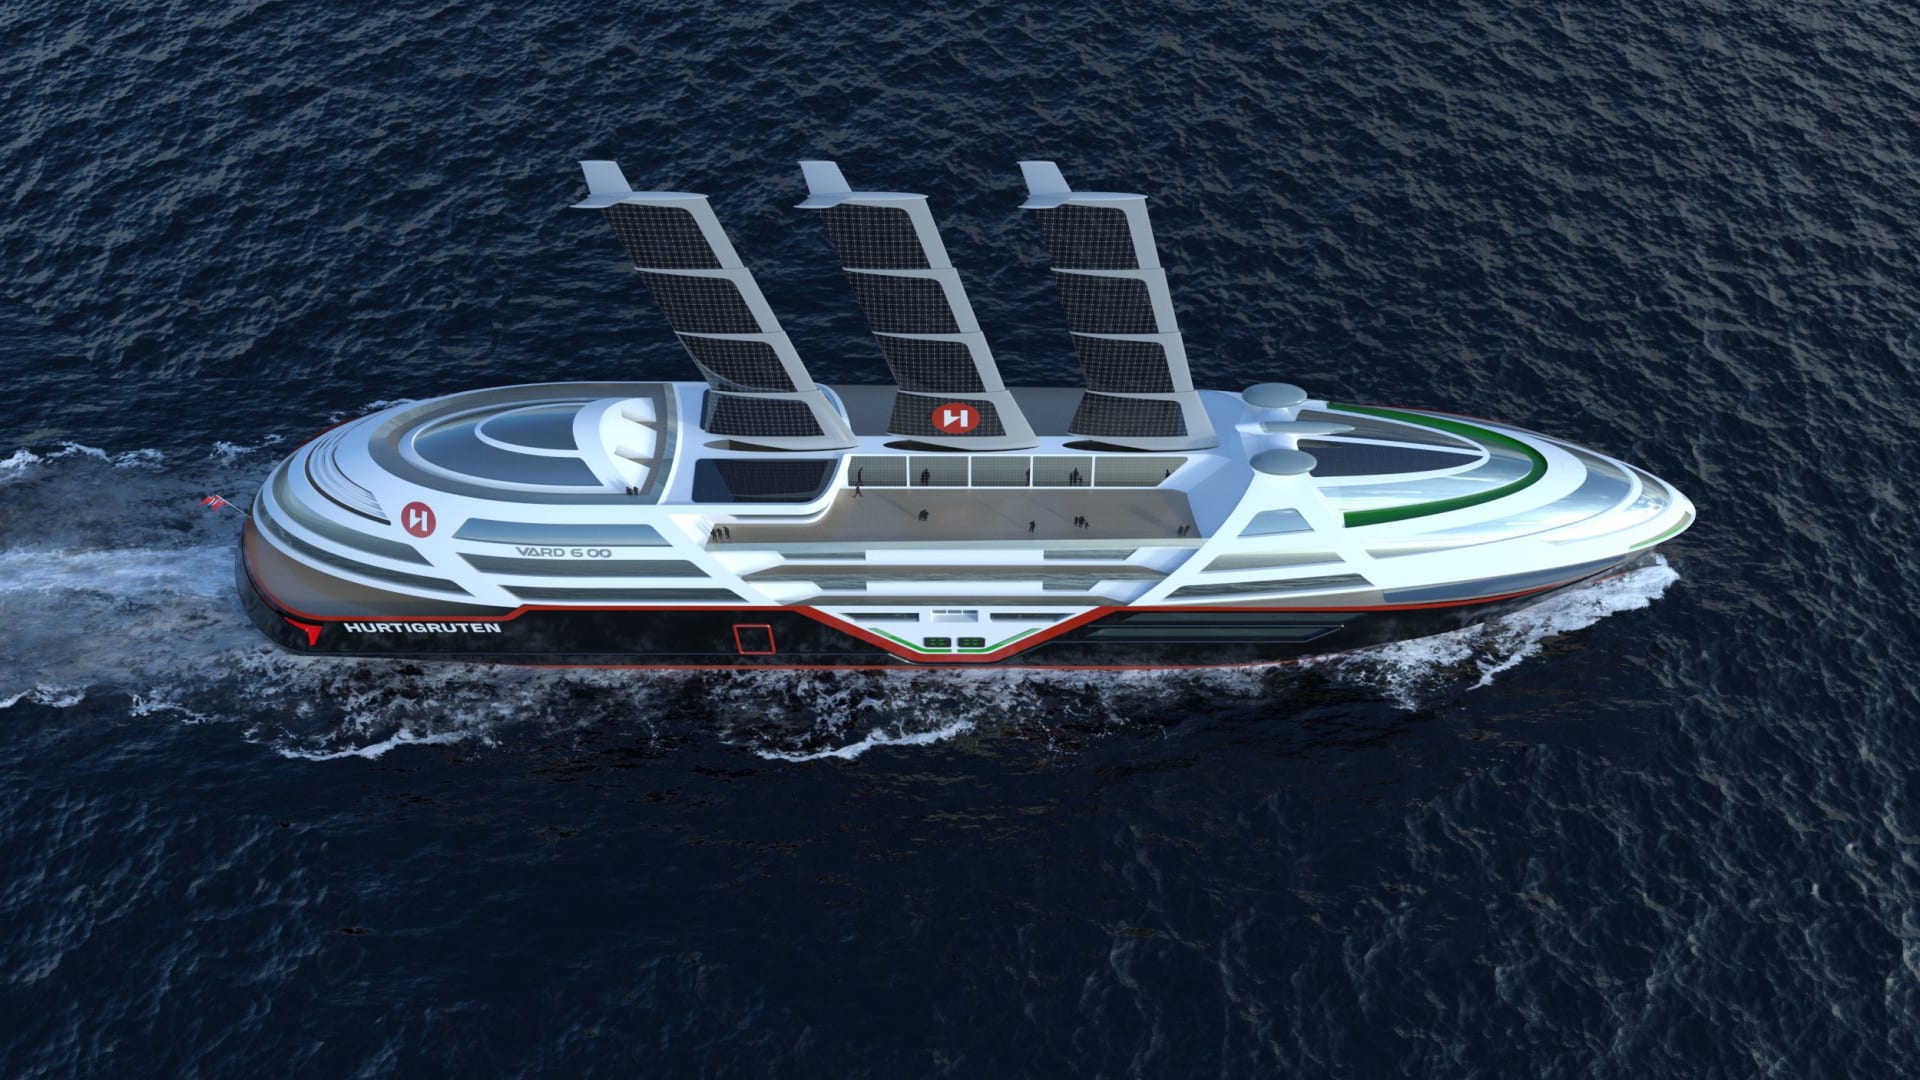 من المقرر إطلاق سفينة سياحية كهربائية بأشرعة شمسية عملاقة في عام 2030